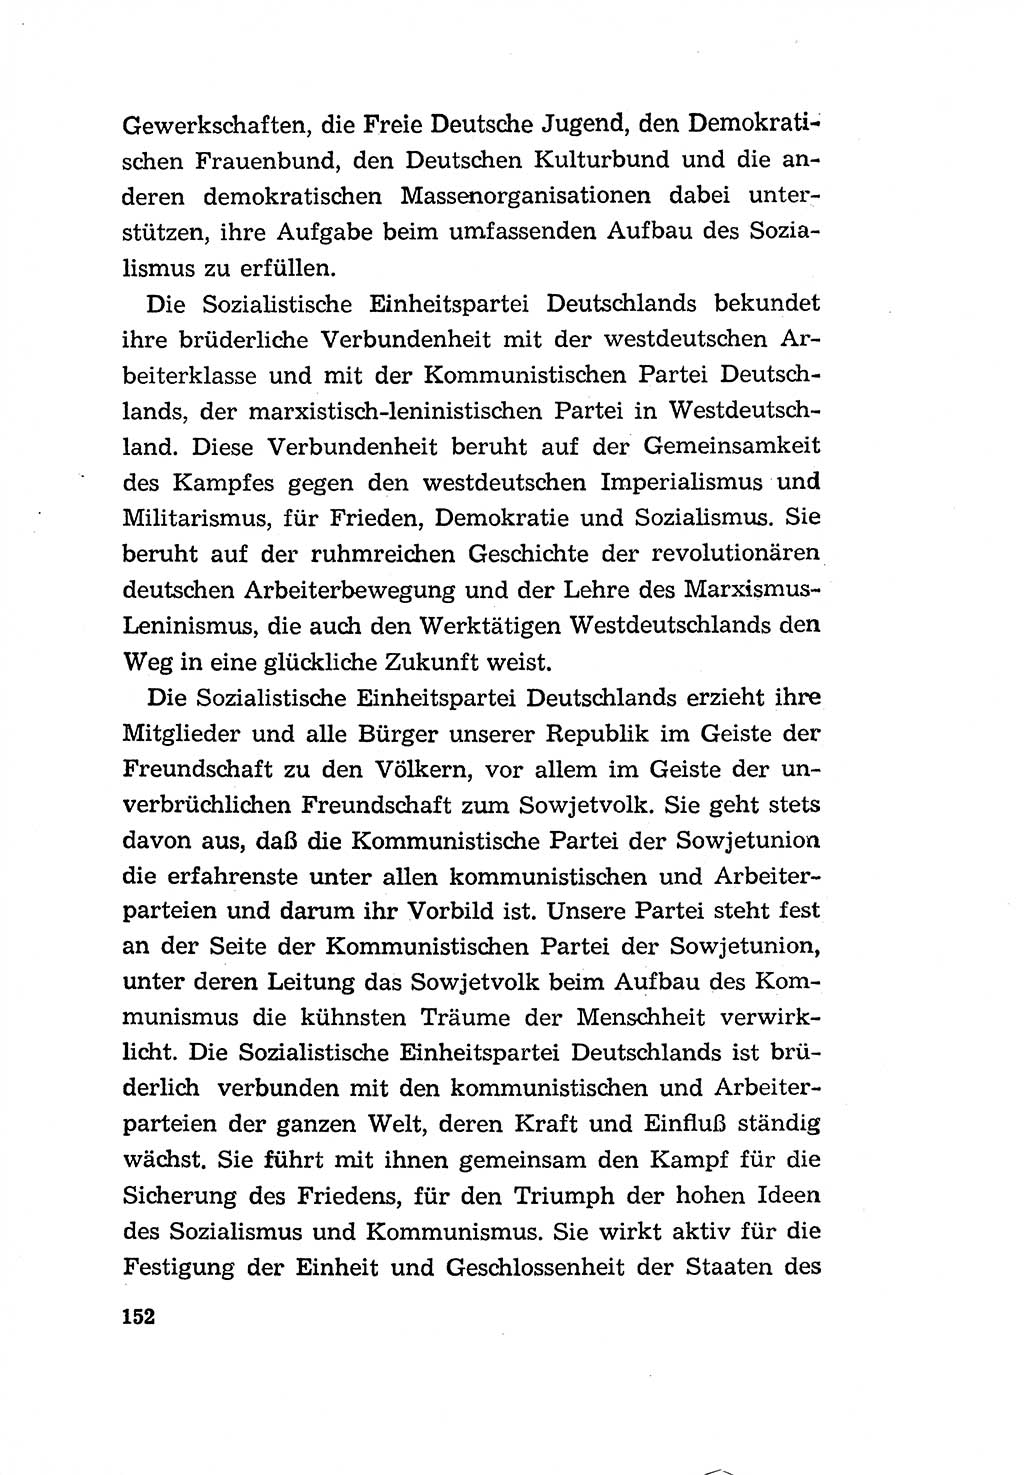 Programm der Sozialistischen Einheitspartei Deutschlands (SED) [Deutsche Demokratische Republik (DDR)] 1963, Seite 152 (Progr. SED DDR 1963, S. 152)